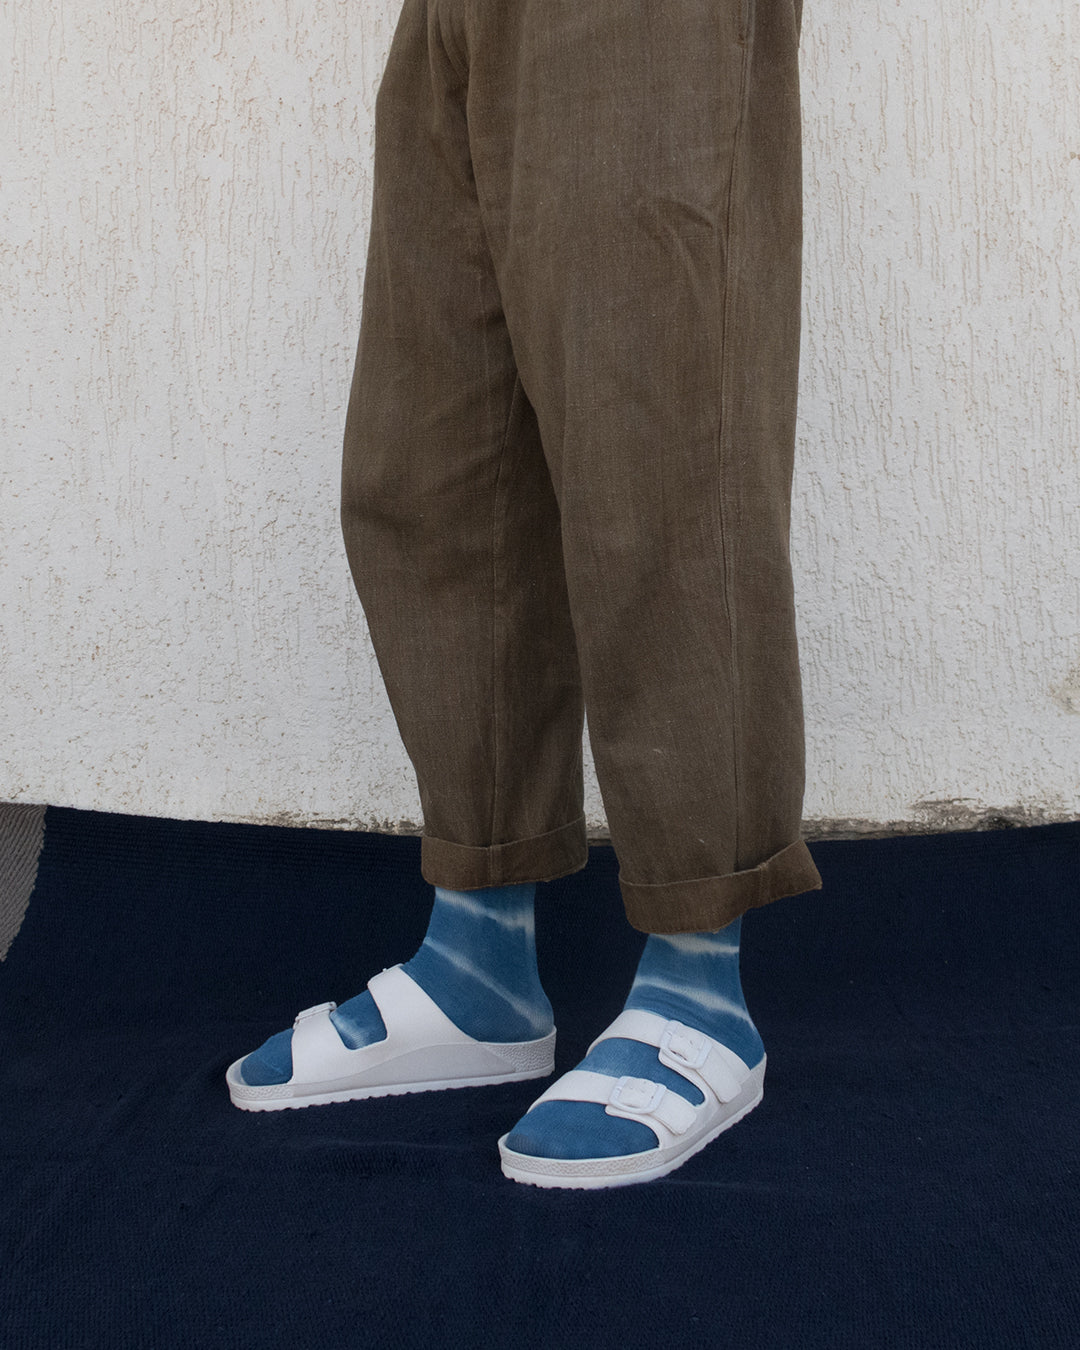 Indigo Stripes Calf Length Socks